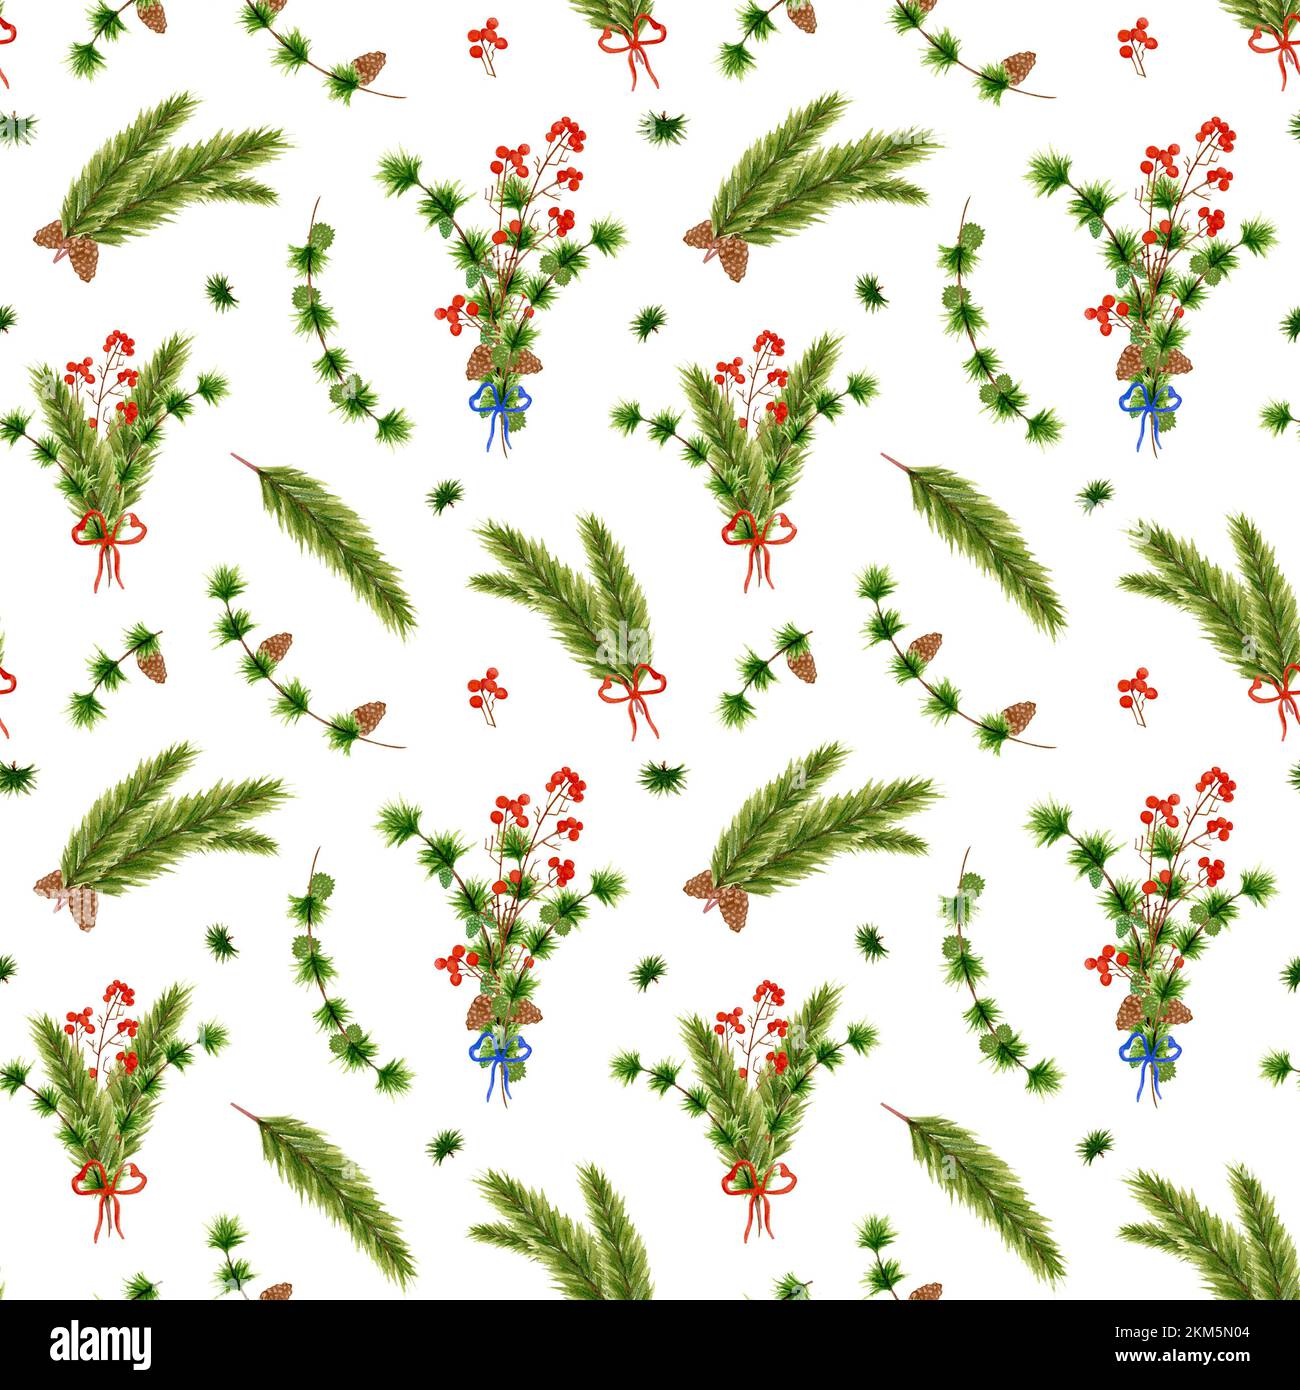 Aquarell weihnachtliches Muster mit Tannenzweigen. Strauß aus den Zweigen von modrina und Fichte mit einem Zweig roter Beeren, mit einer Schleife verbunden. Neues Jahr Stockfoto